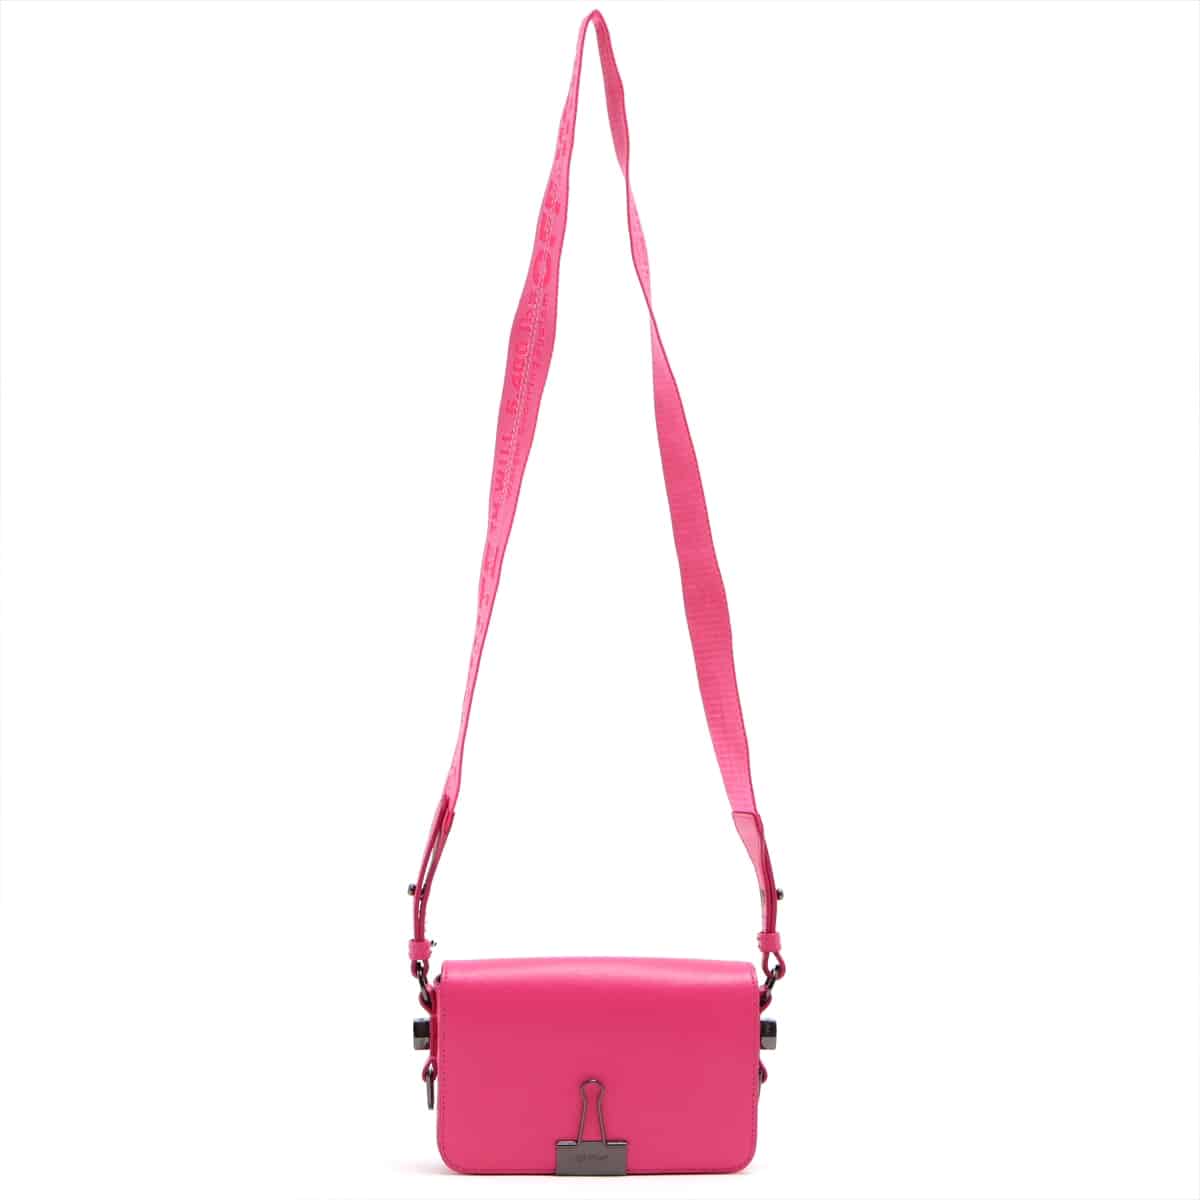 Off-White Binder Clip Leather Shoulder bag Pink